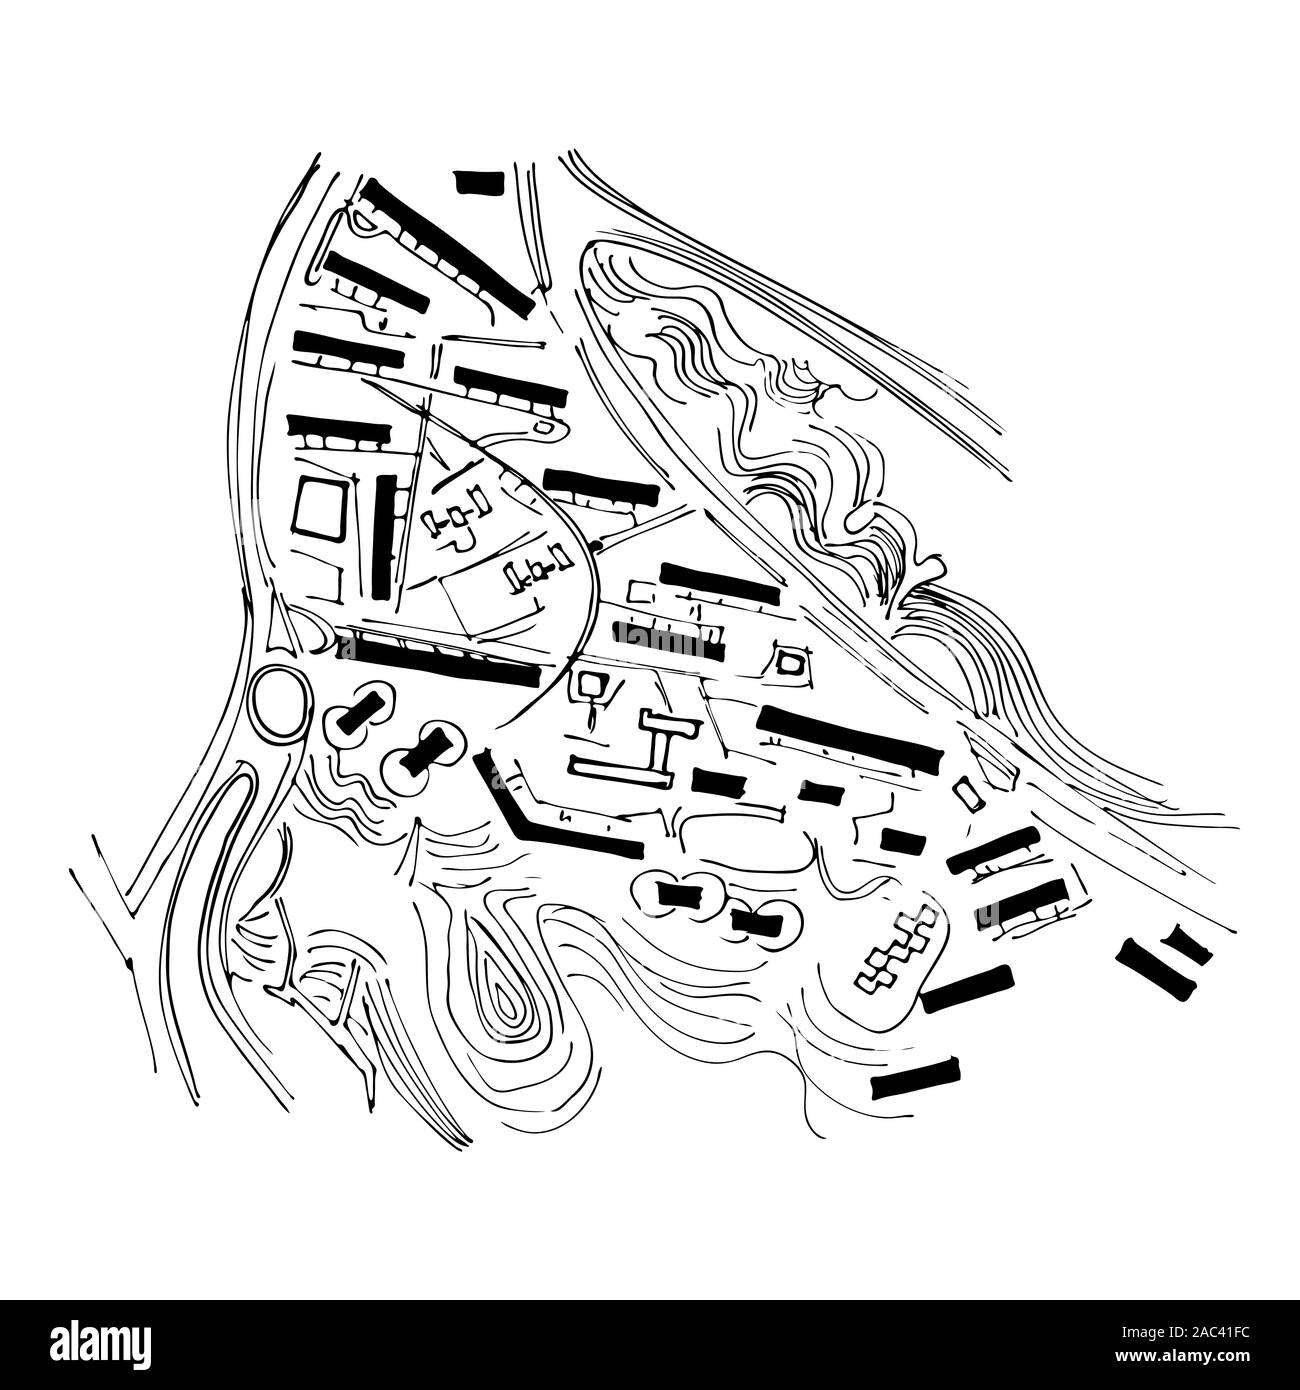 Piano urbano della città, il vecchio villaggio. Doodle mappa della città. Vettore di disegno della città. Mappa stradale. Una megalopoli futuristica Città piano di base. Illustrazione Vettoriale